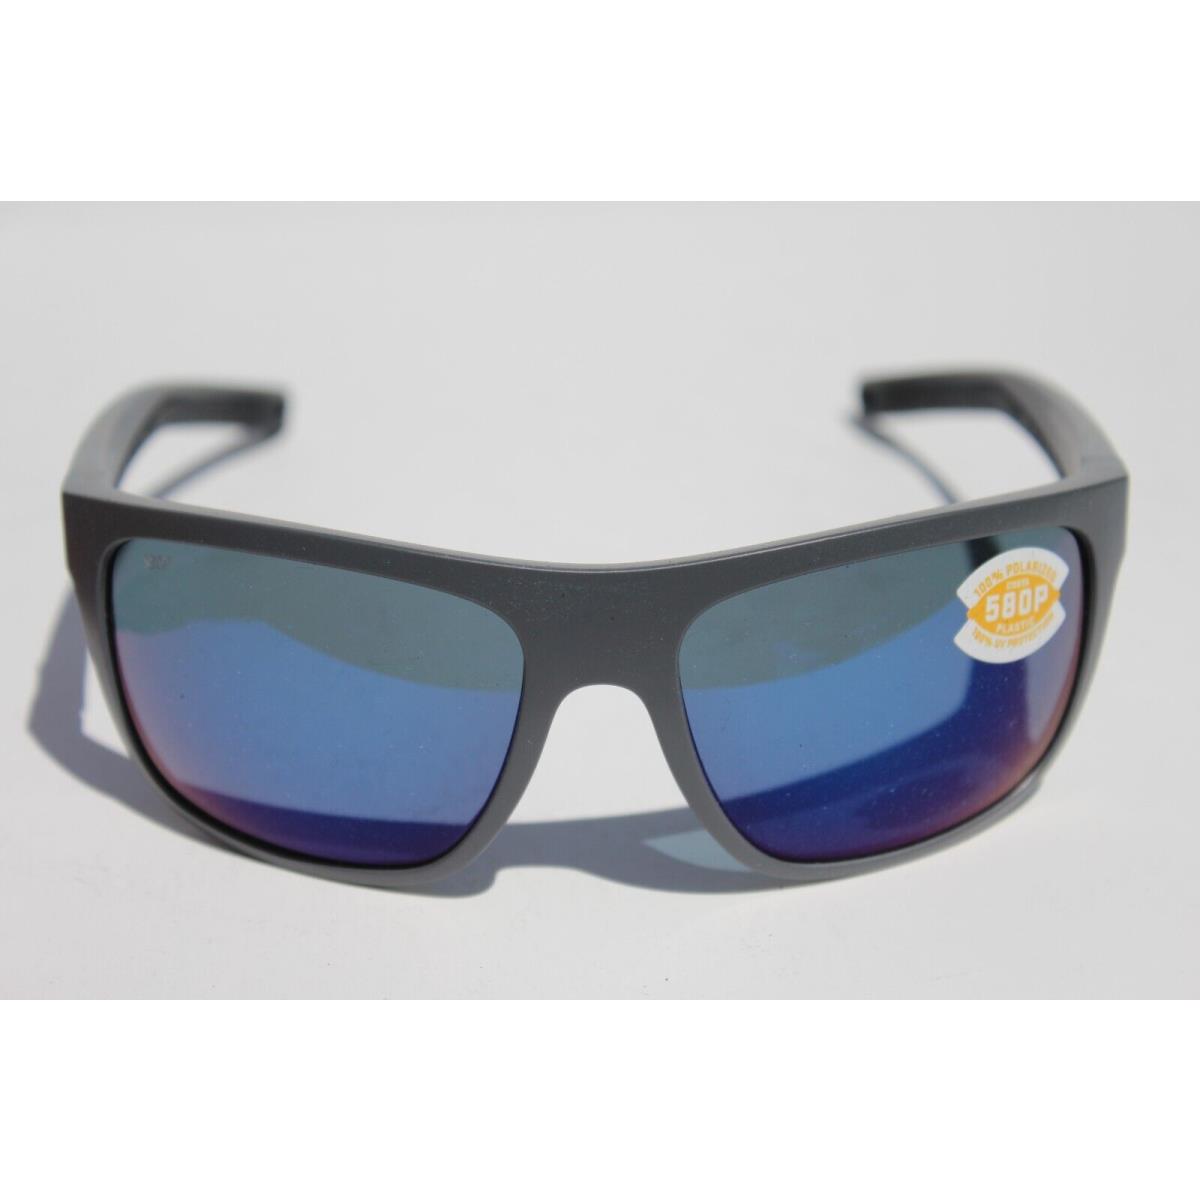 Costa Del Mar sunglasses Broadbill - Gray Frame, Blue Lens 2